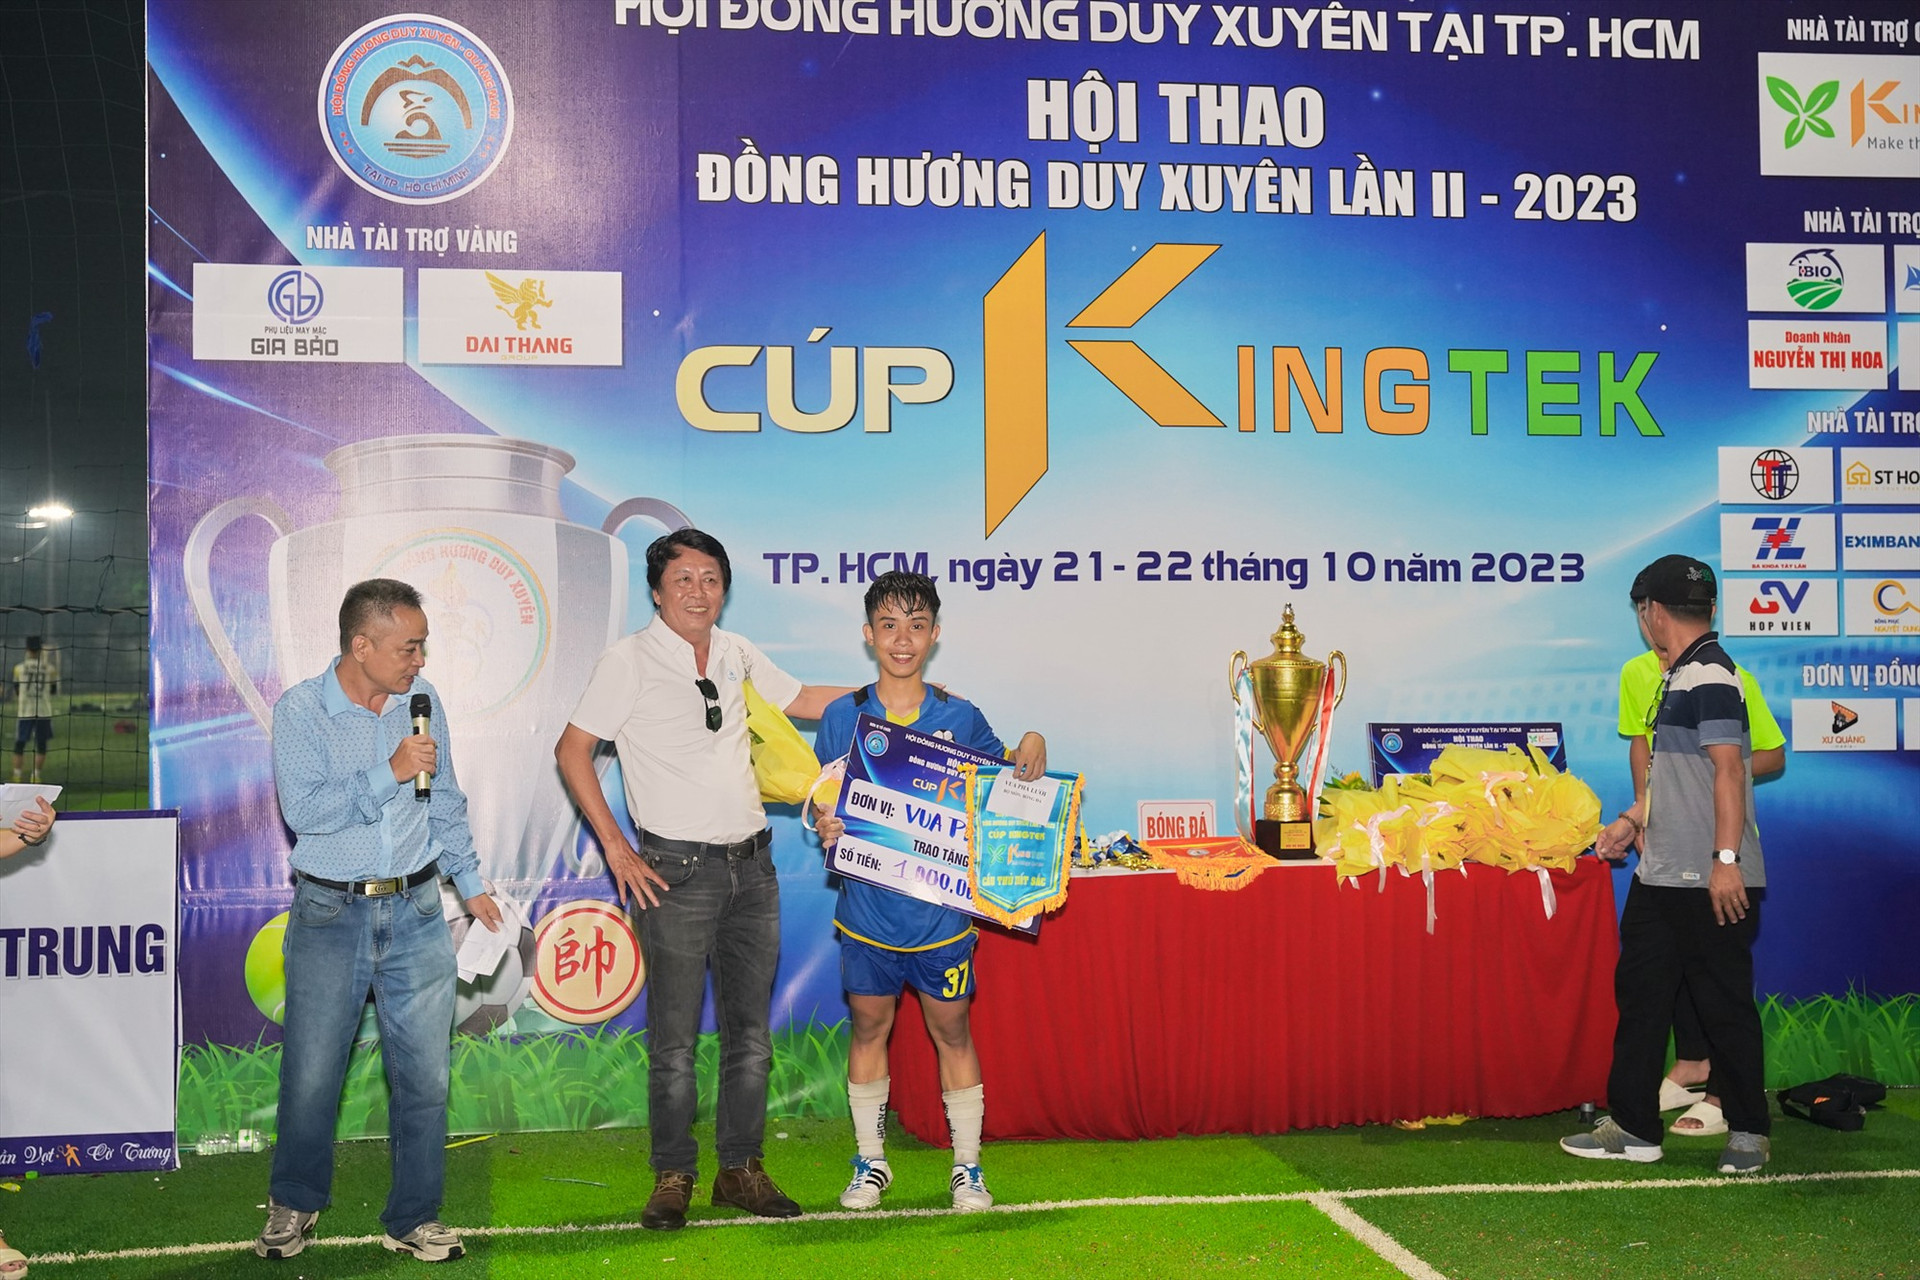 Cầu thủ Trần Phước Lộc đạt giải Vua phá lưới. Ảnh: PHAN VINH